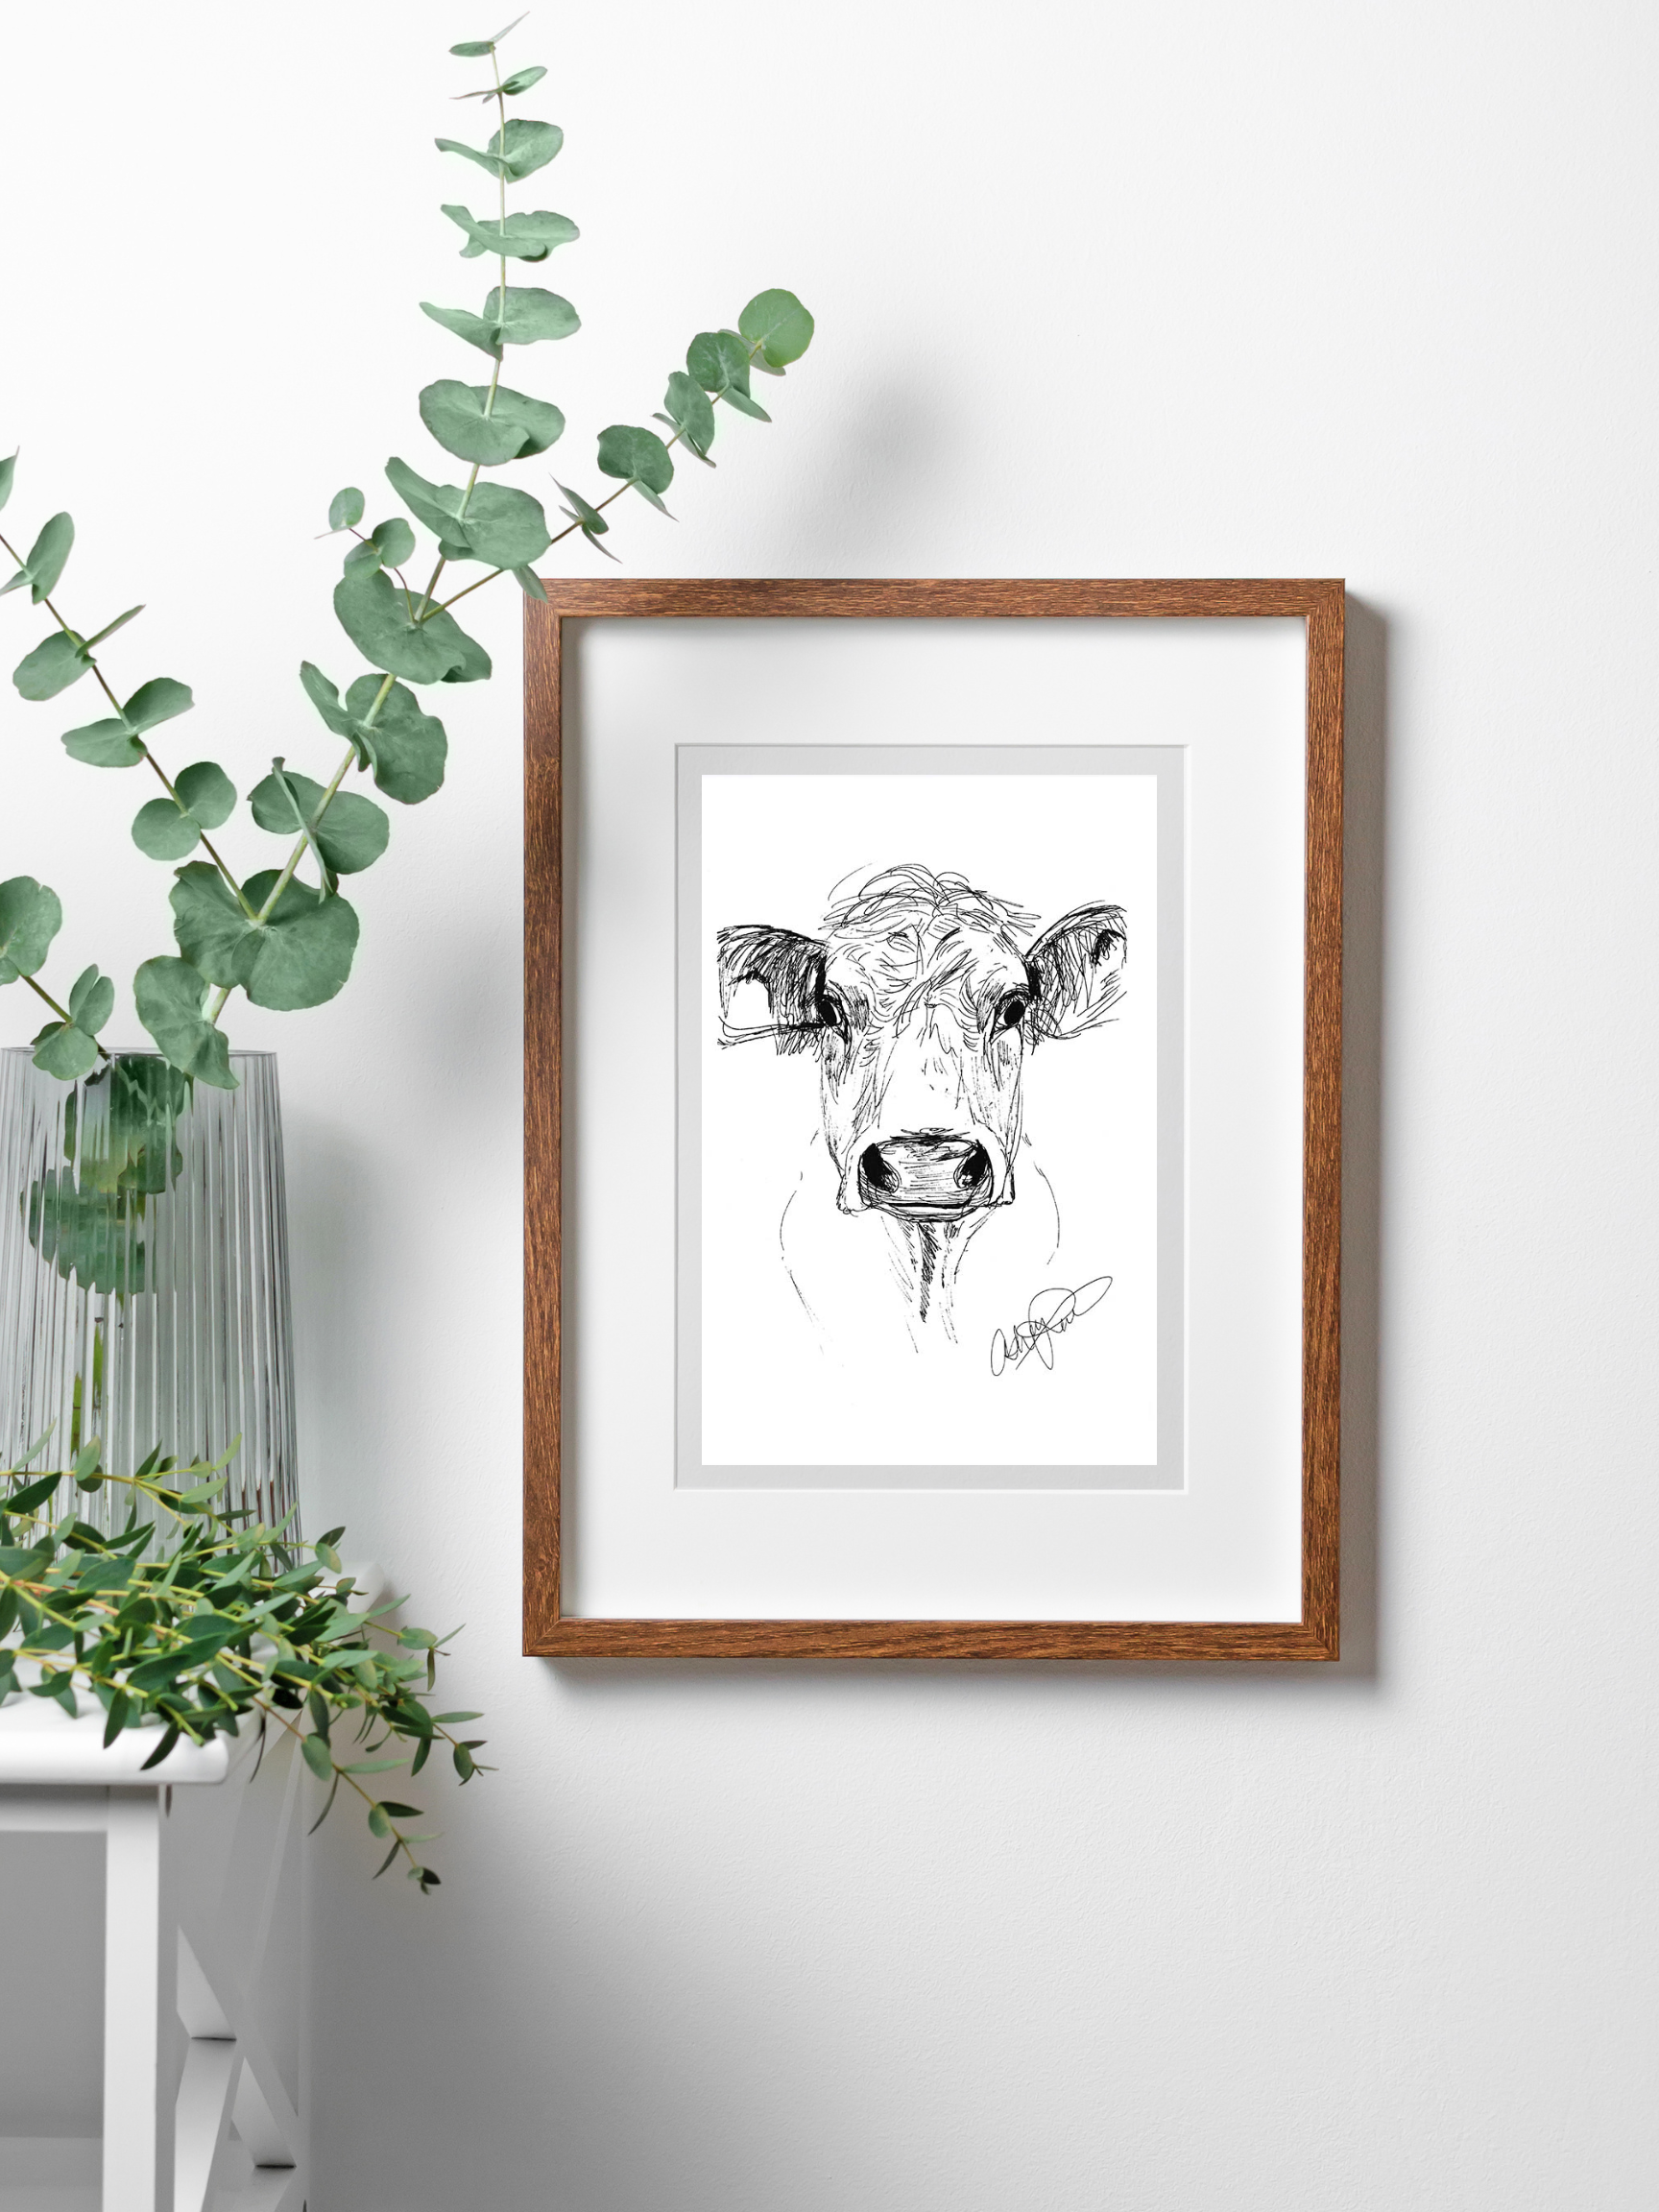 Ink Cow Sketch - Original Art Print, Framed in a wooden frame.